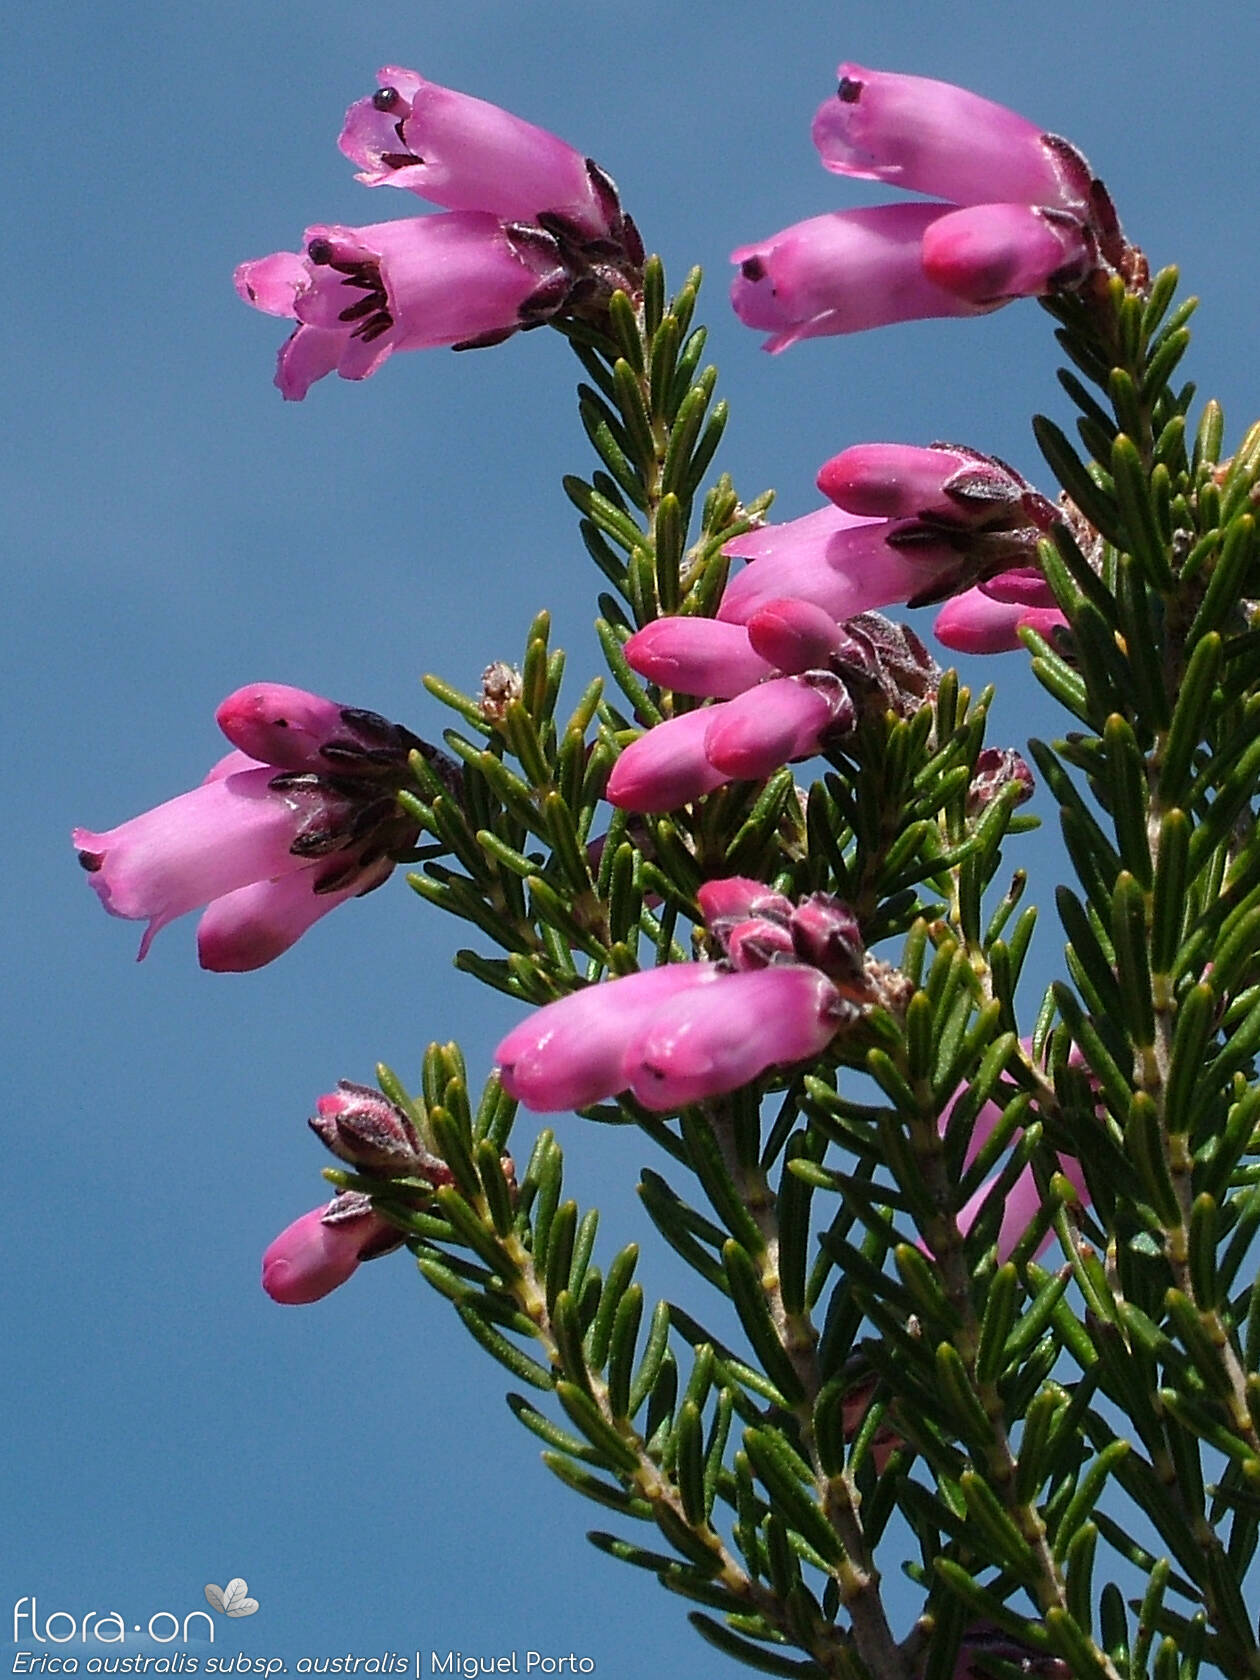 Erica australis australis - Flor (geral) | Miguel Porto; CC BY-NC 4.0